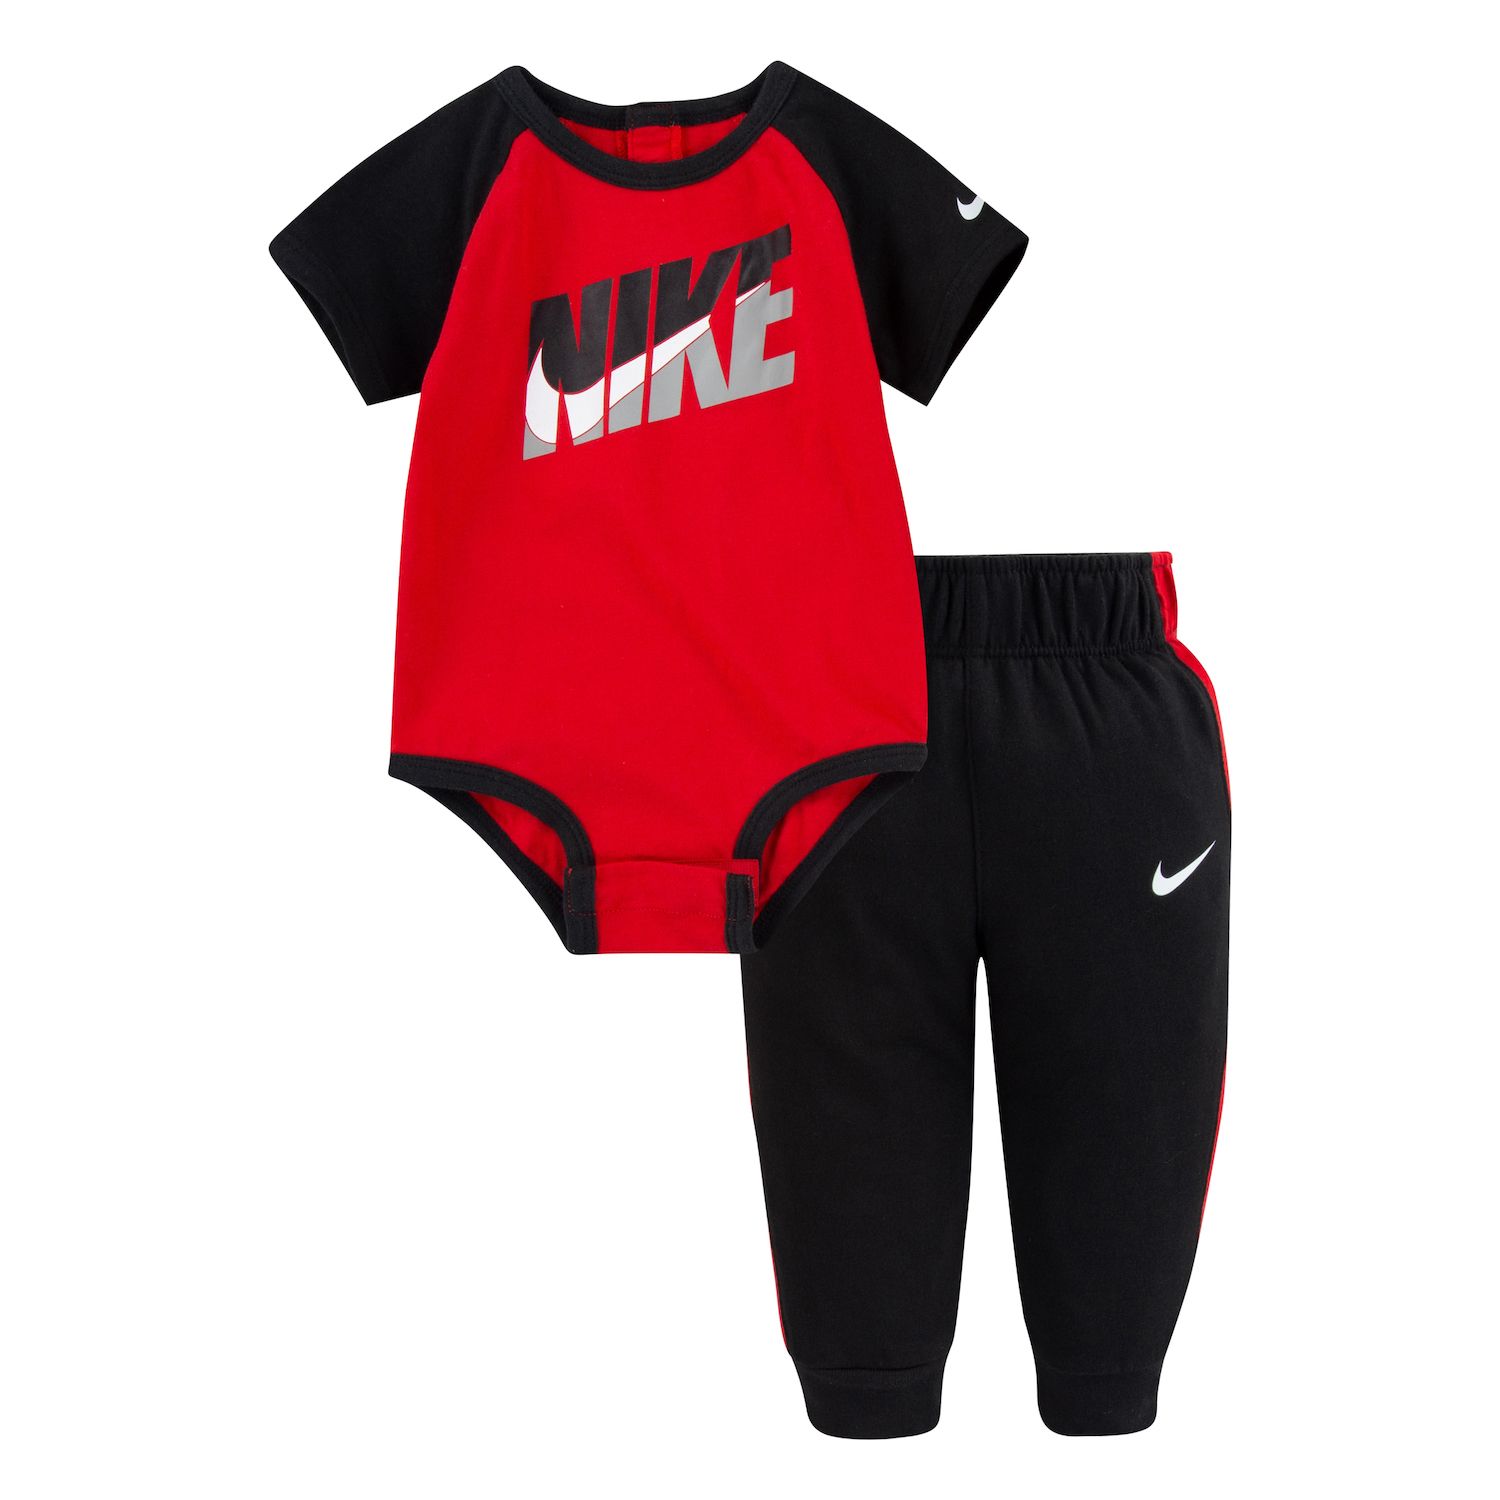 Nike Baby Clothing | Kohl's